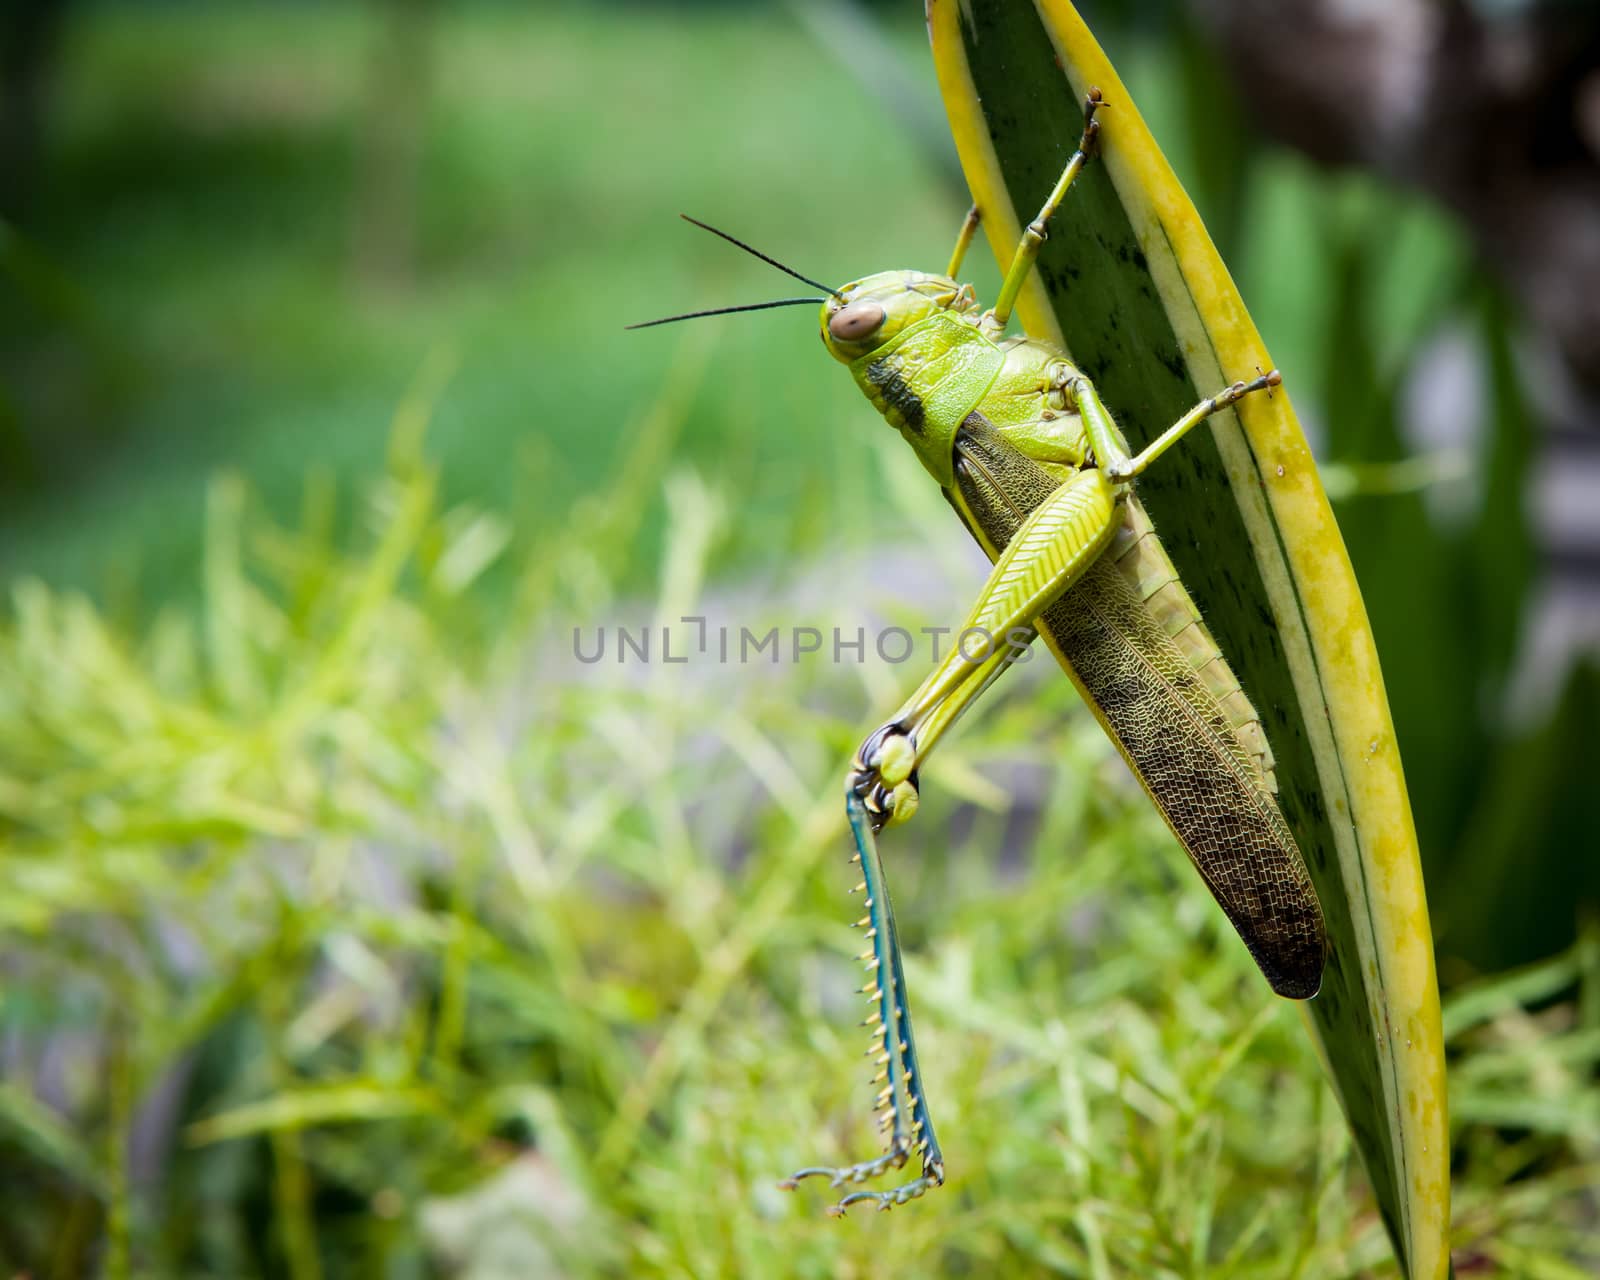 Grasshopper on a leaf stretching legs